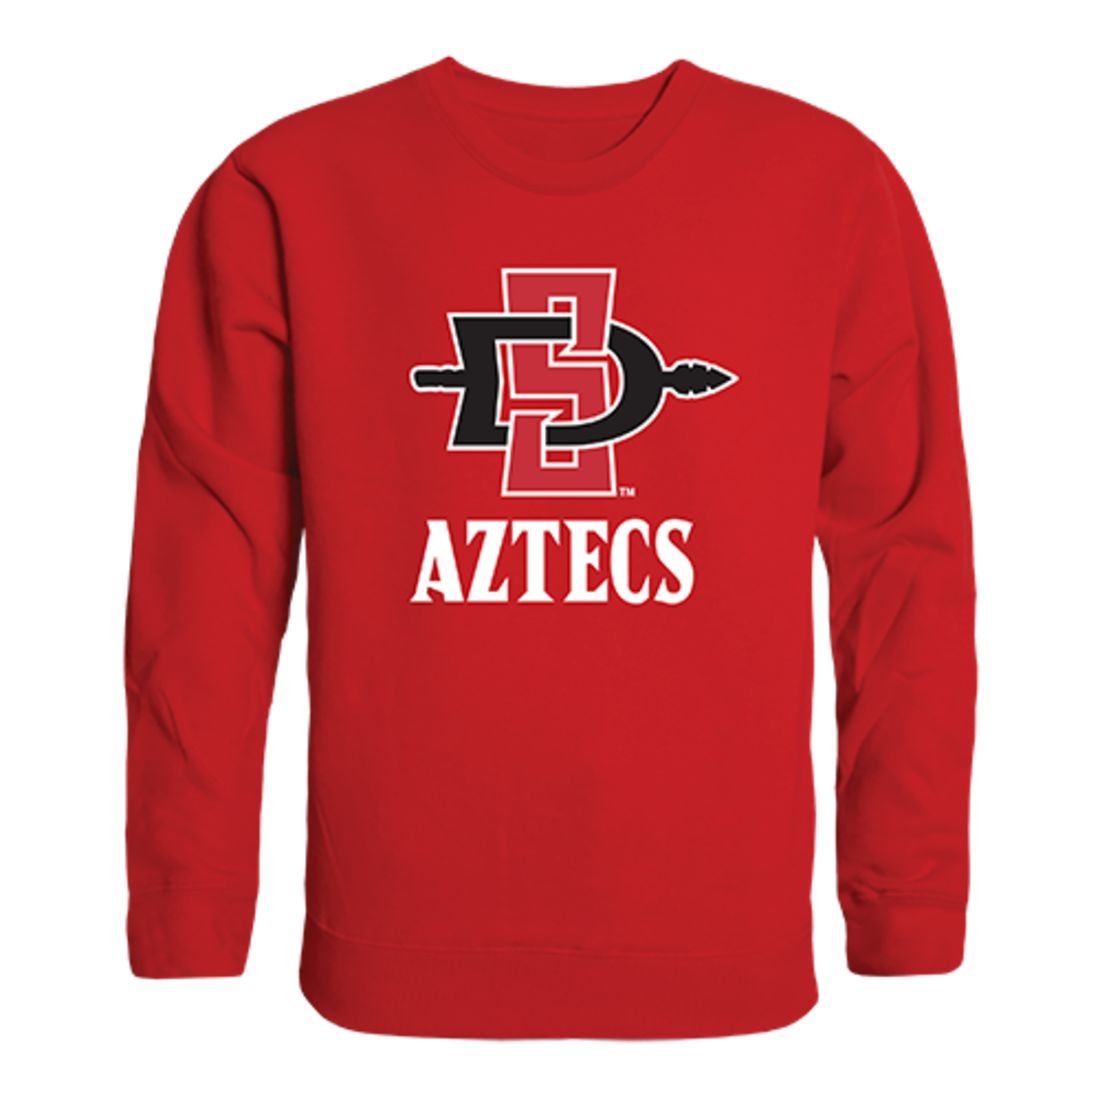 SDSU San Diego State University Aztecs Crewneck Pullover Sweatshirt Sweater Red-Campus-Wardrobe